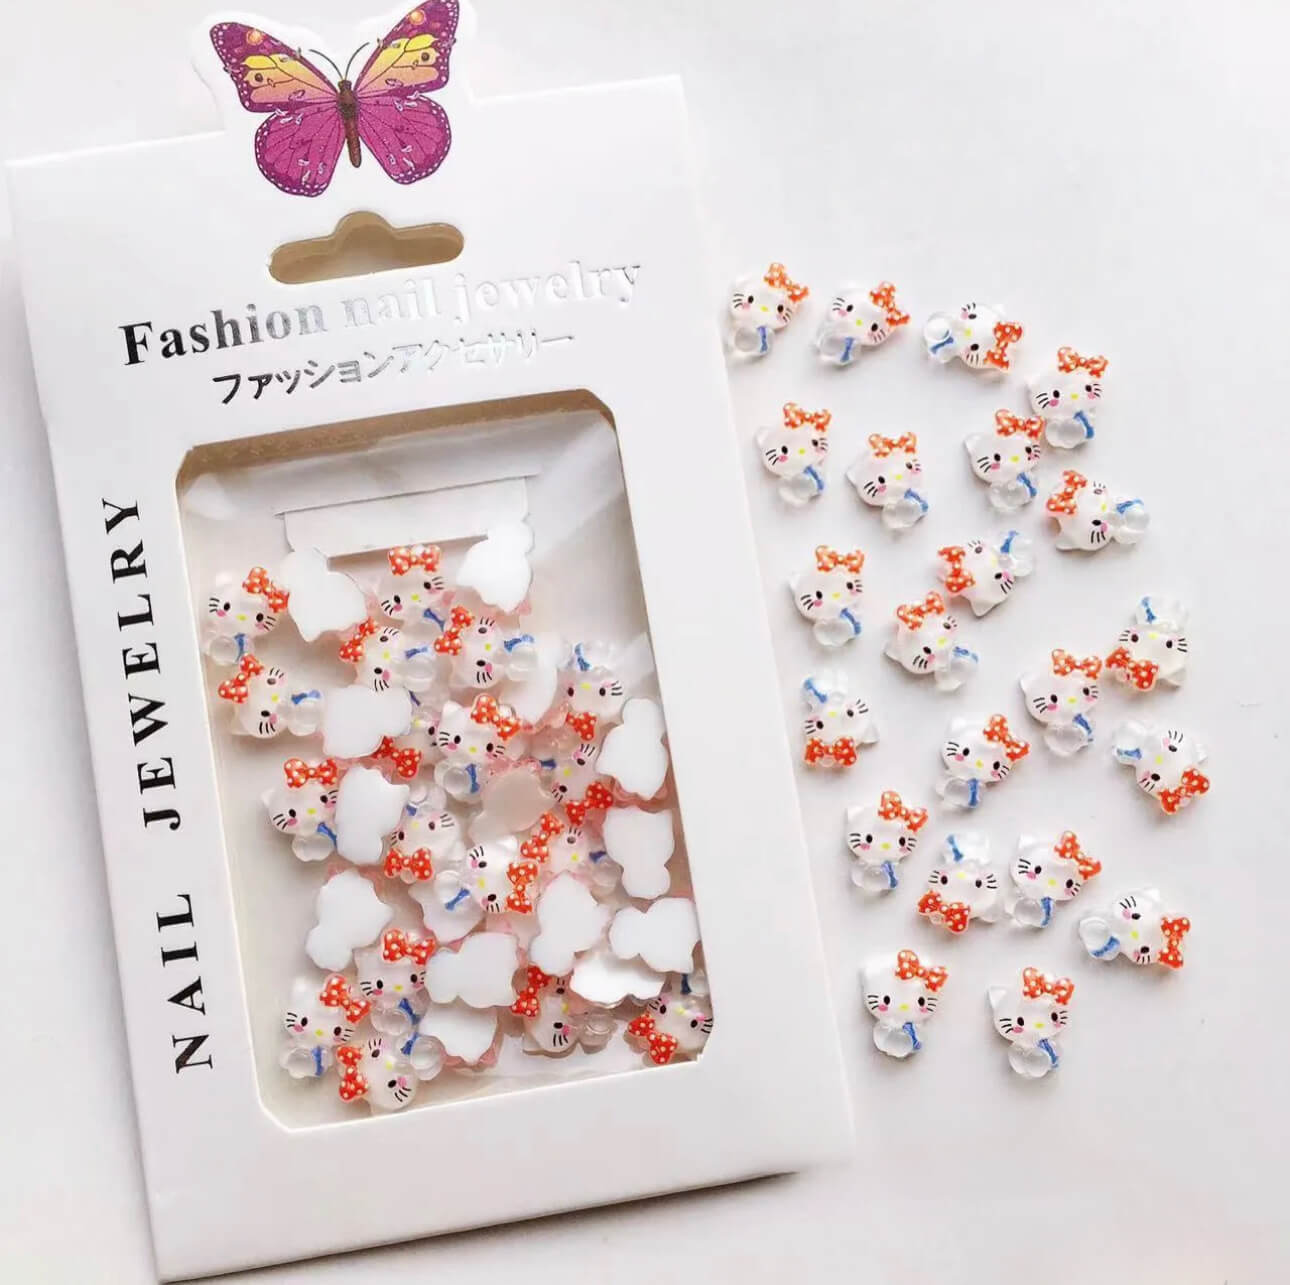 3D Resin Nail Charm Hello Kitty 30pcs/bag - Premier Nail Supply 